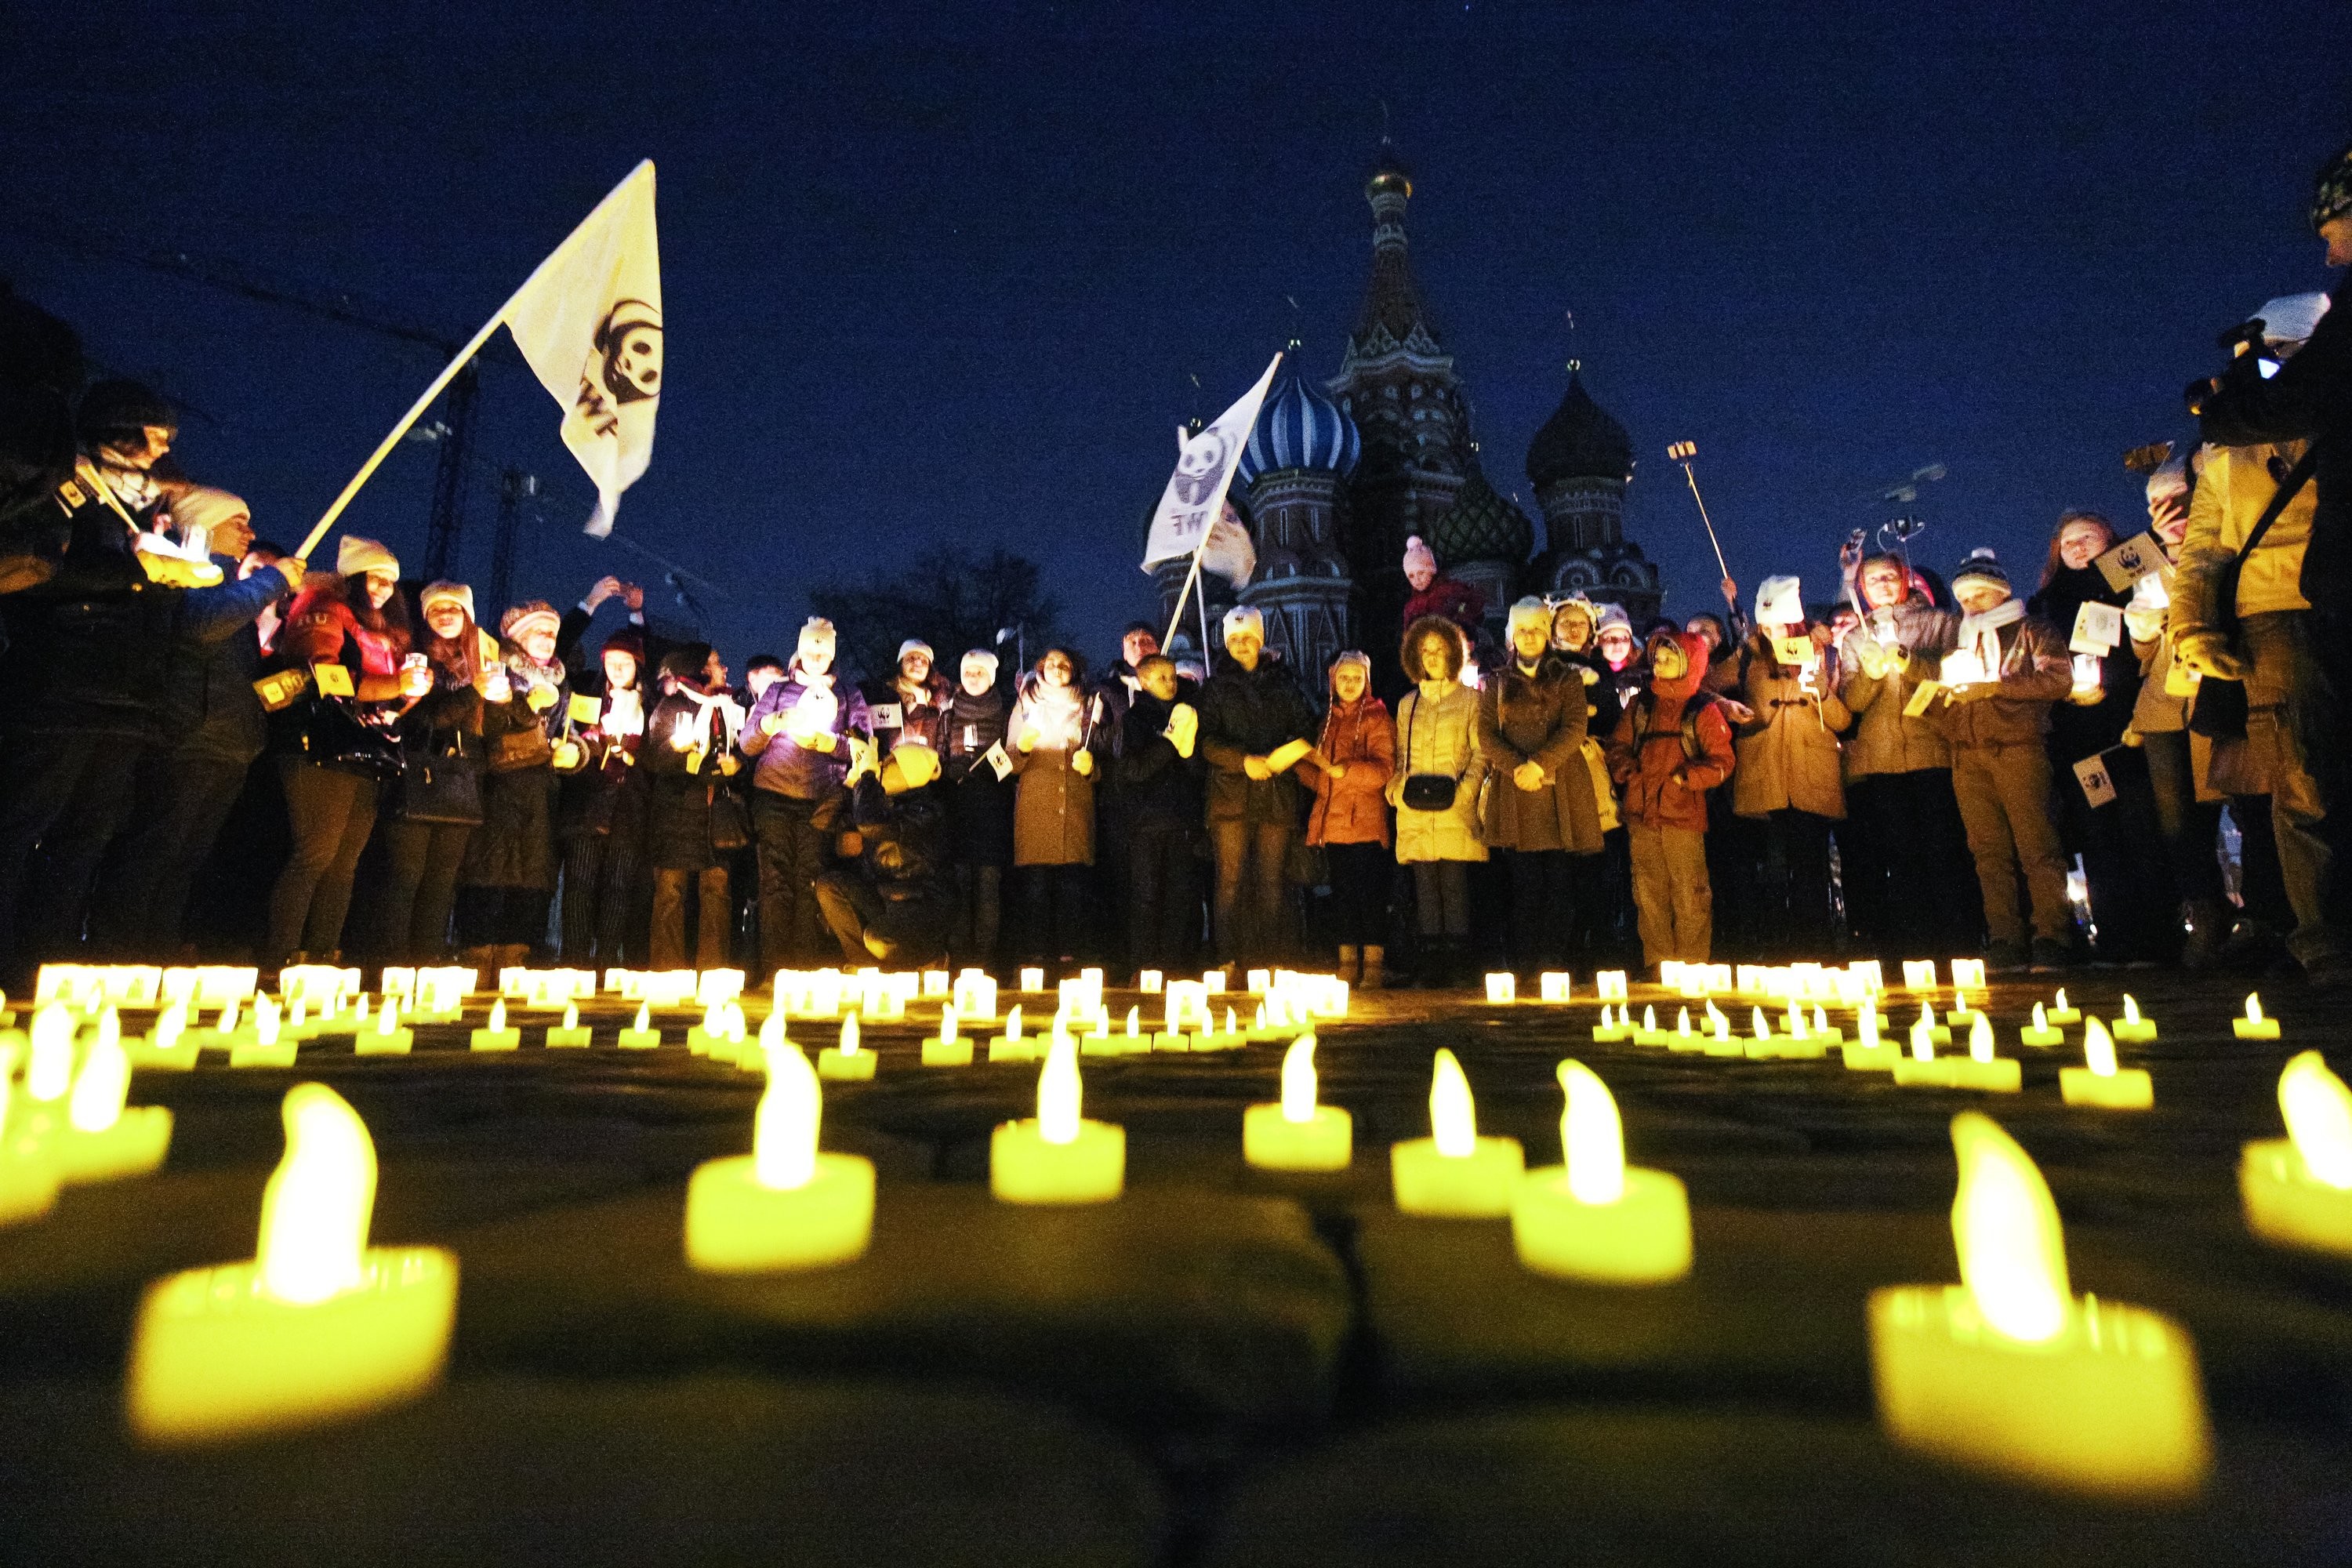 Акция «Час Земли» на Красной площади в Москве. Фото: © Агентство городских новостей "Москва"/Зыков Кирилл
